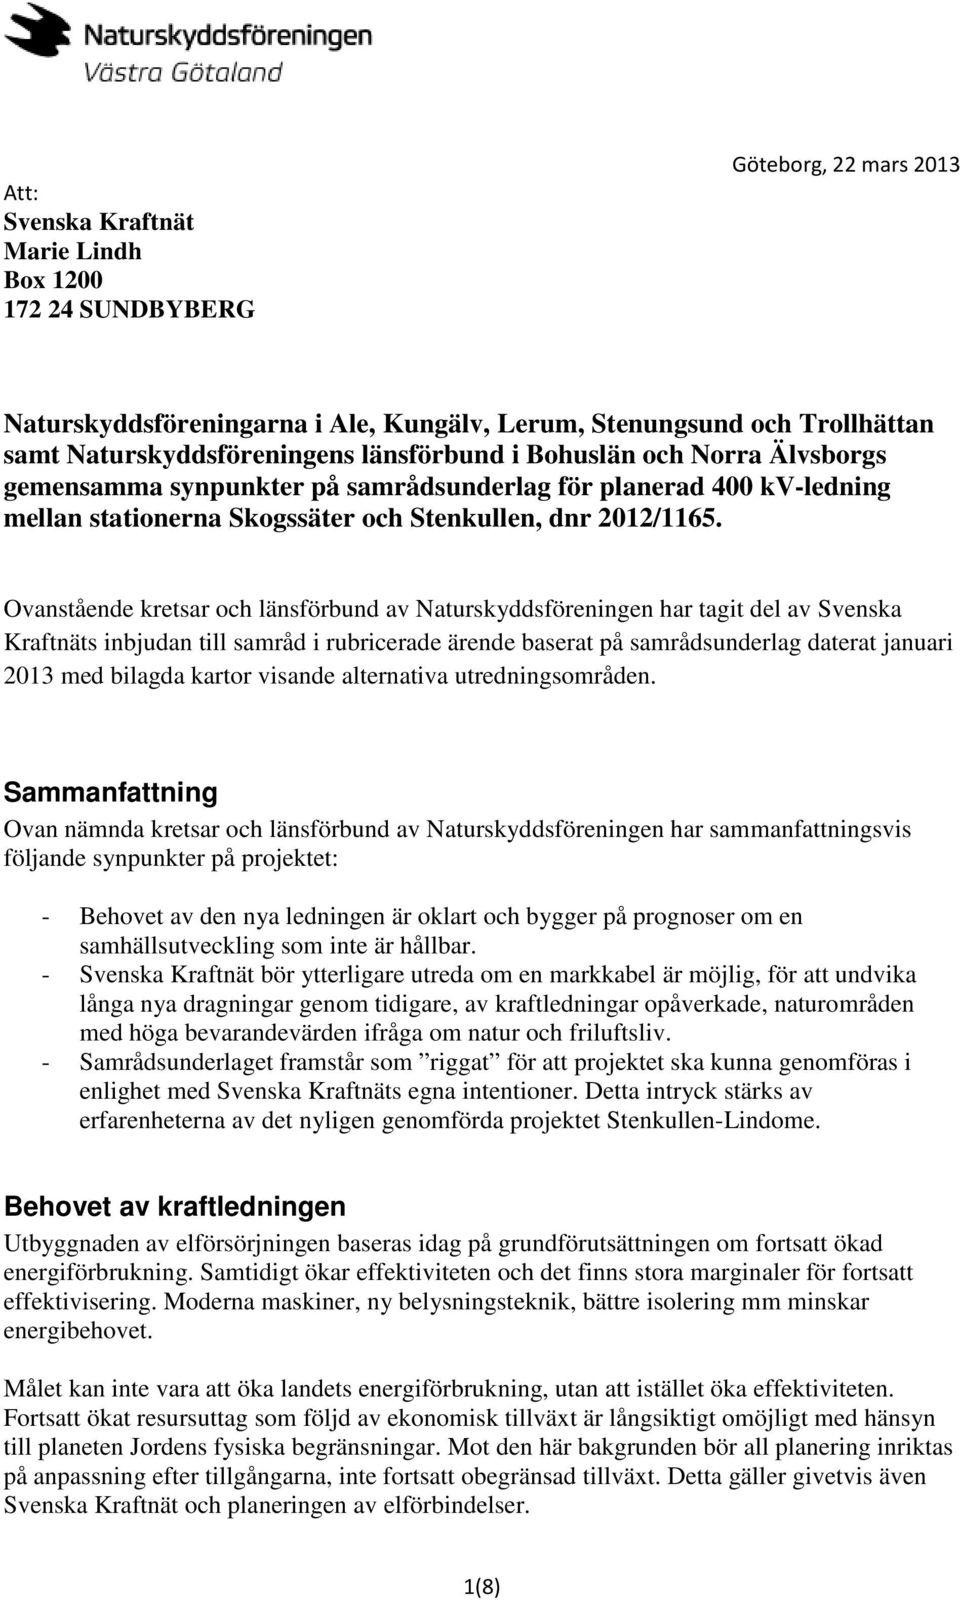 Ovanstående kretsar och länsförbund av Naturskyddsföreningen har tagit del av Svenska Kraftnäts inbjudan till samråd i rubricerade ärende baserat på samrådsunderlag daterat januari 2013 med bilagda